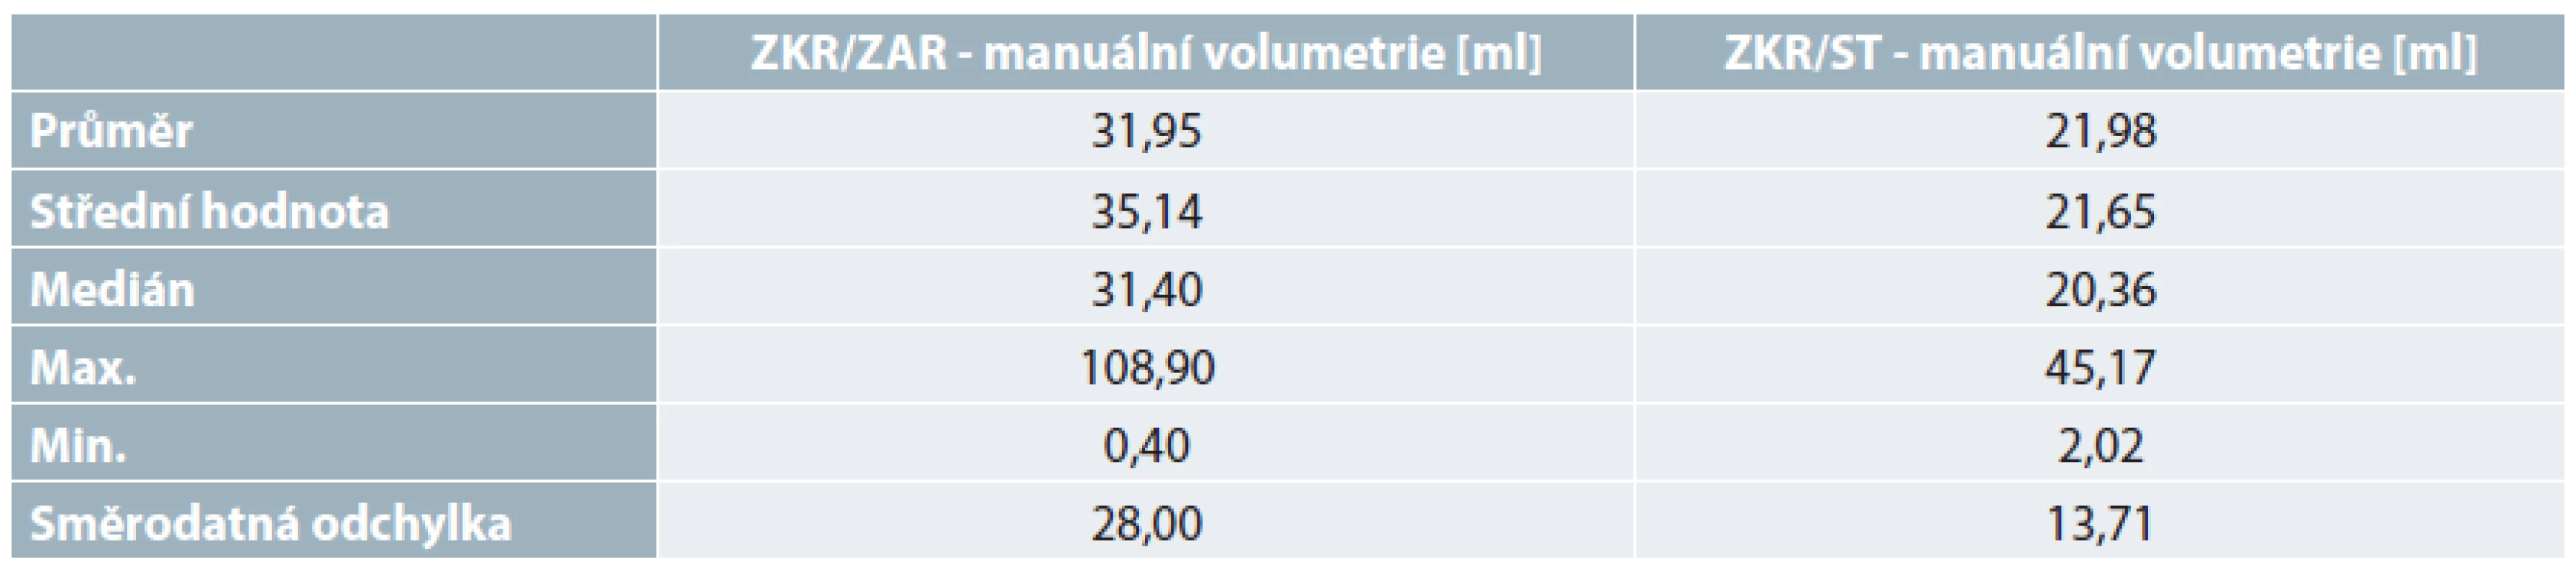 Číselné srovnání manuální volumetrie